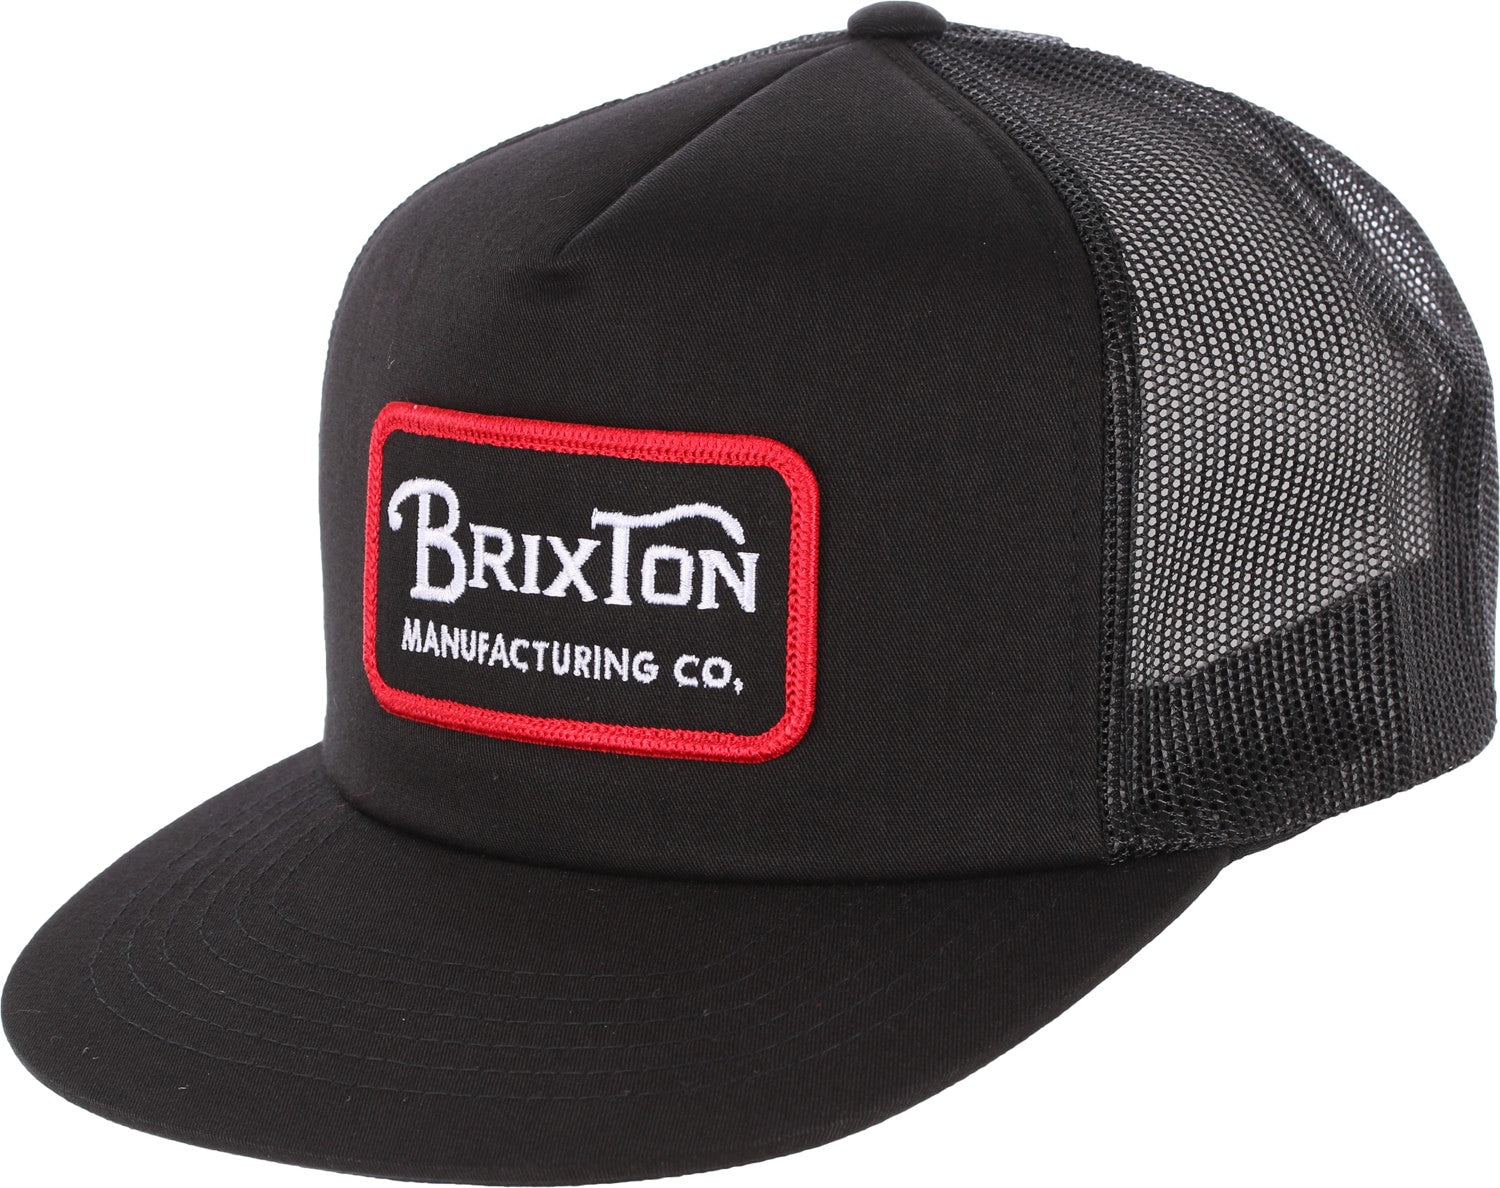 Brixton Grade black mesh cap